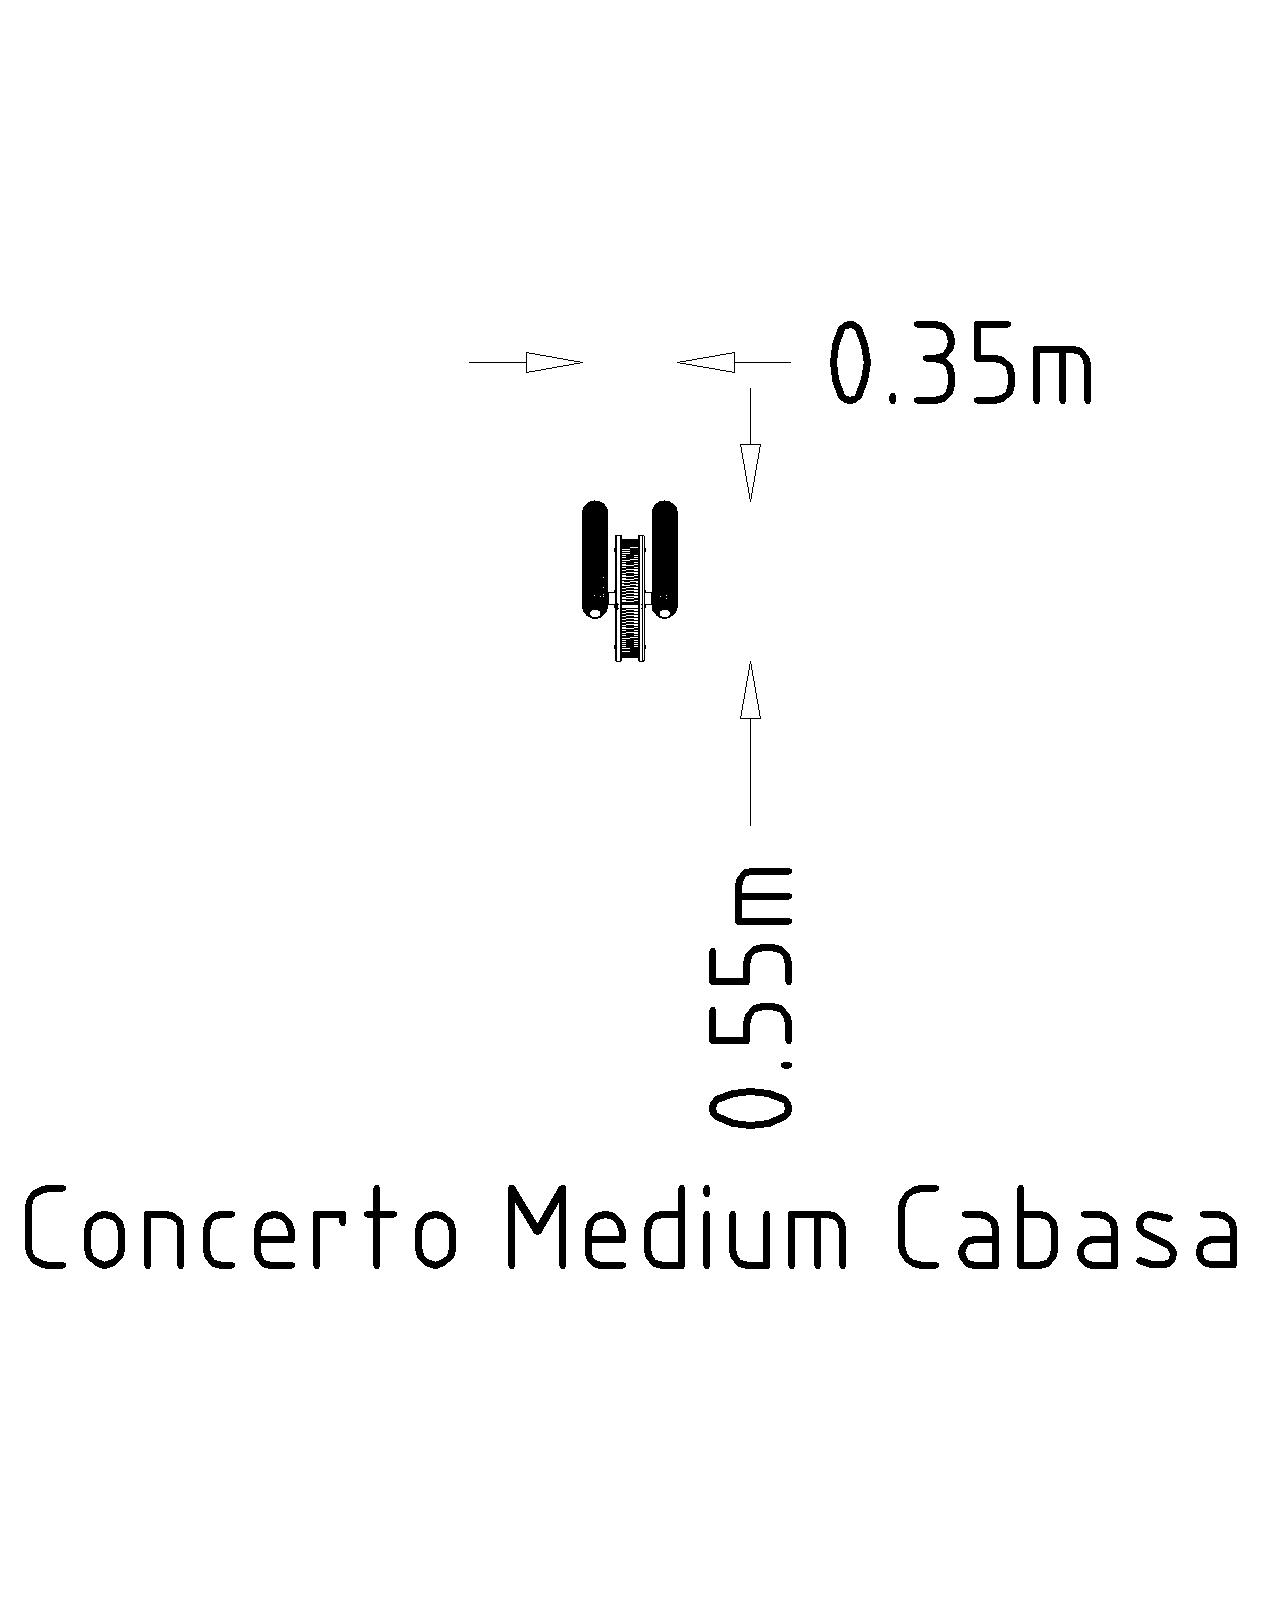 Concerto Medium Cabasa